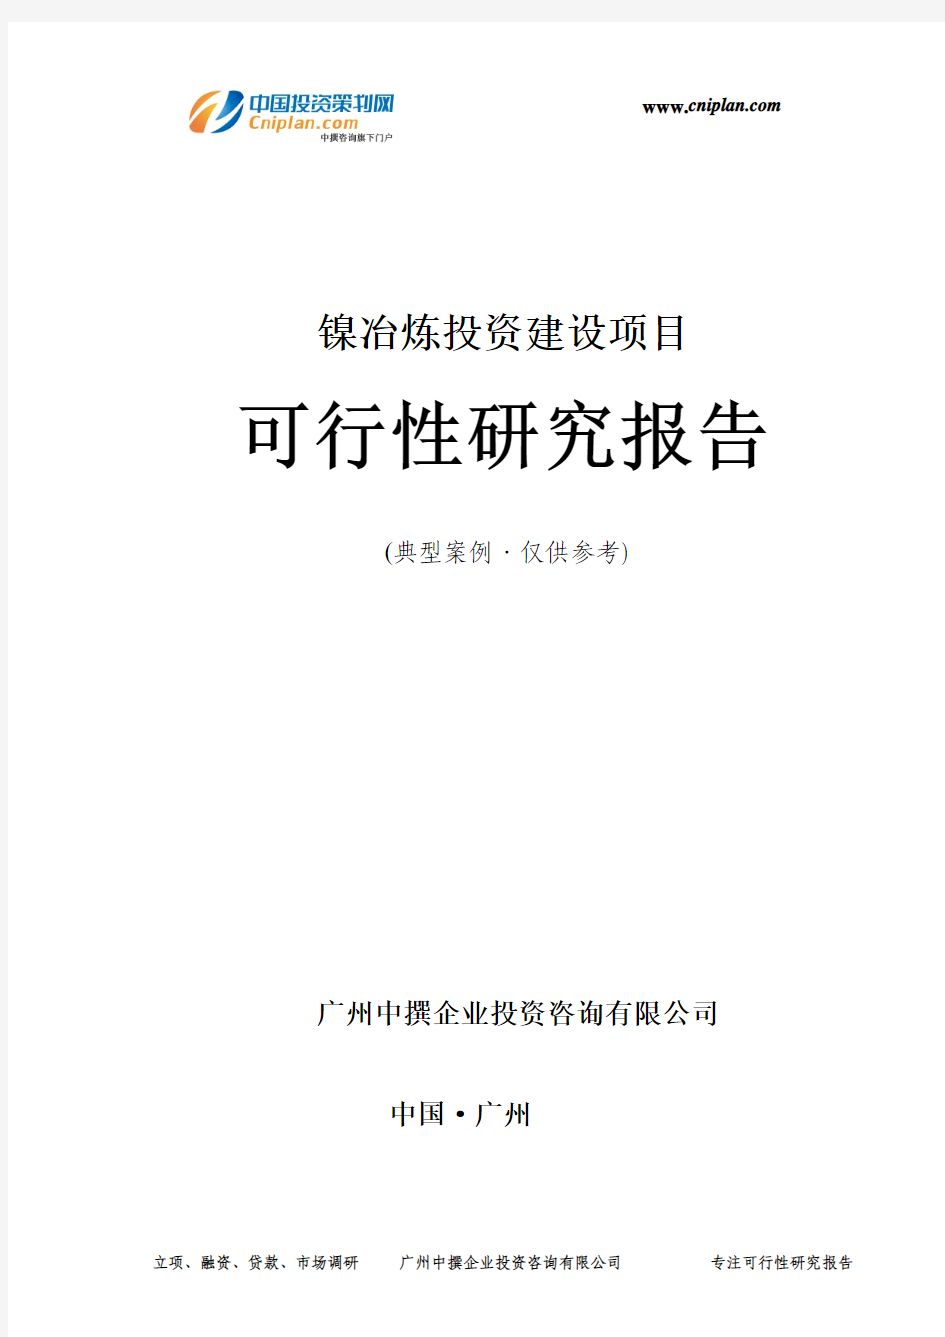 镍冶炼投资建设项目可行性研究报告-广州中撰咨询